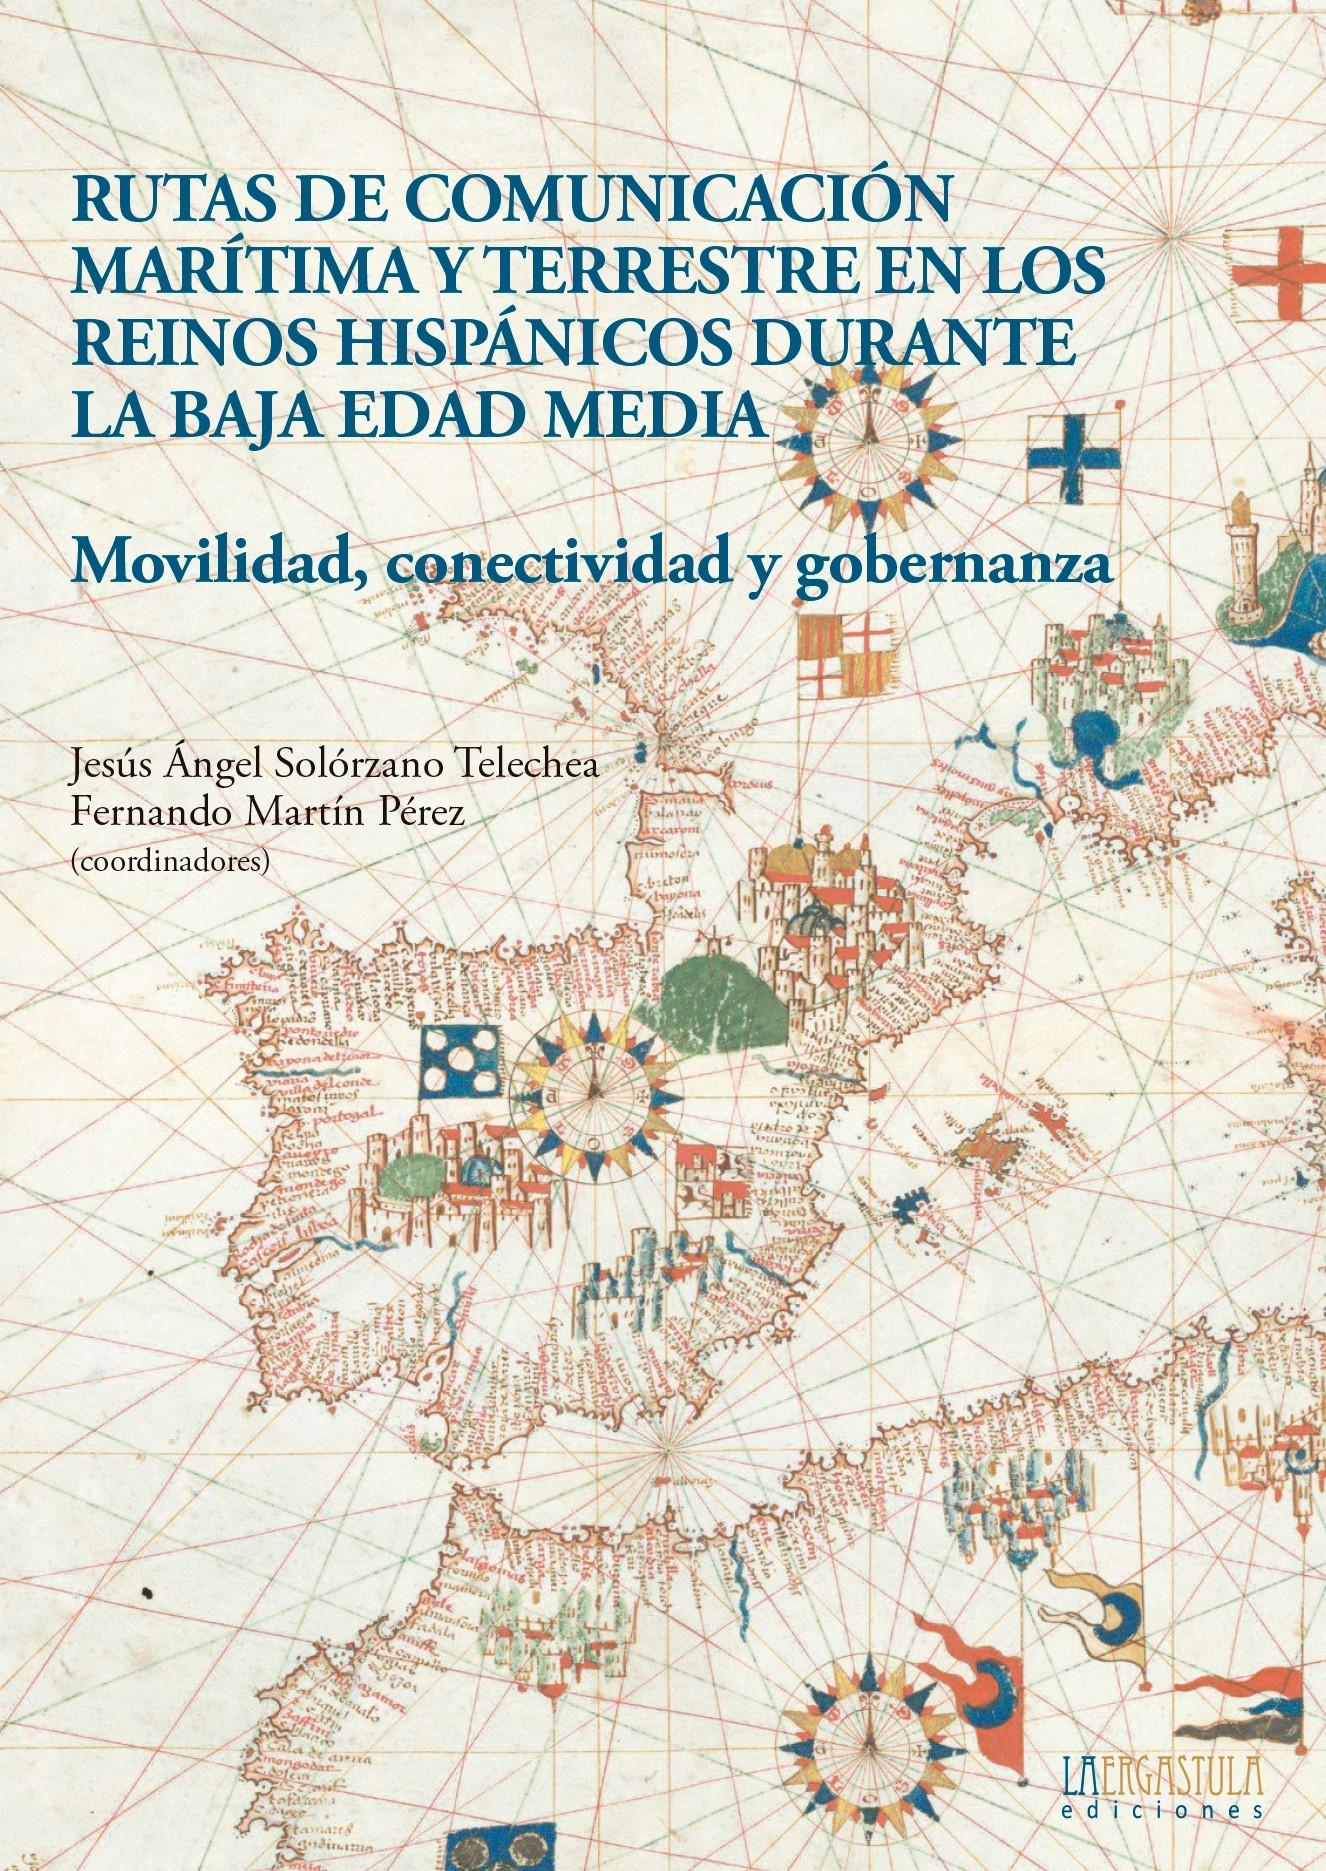 Rutas de comunicación marítima y terrestre en los reinos hispánicos durante la Baja Edad Media "Movilidad, conectividad y gobernanza"